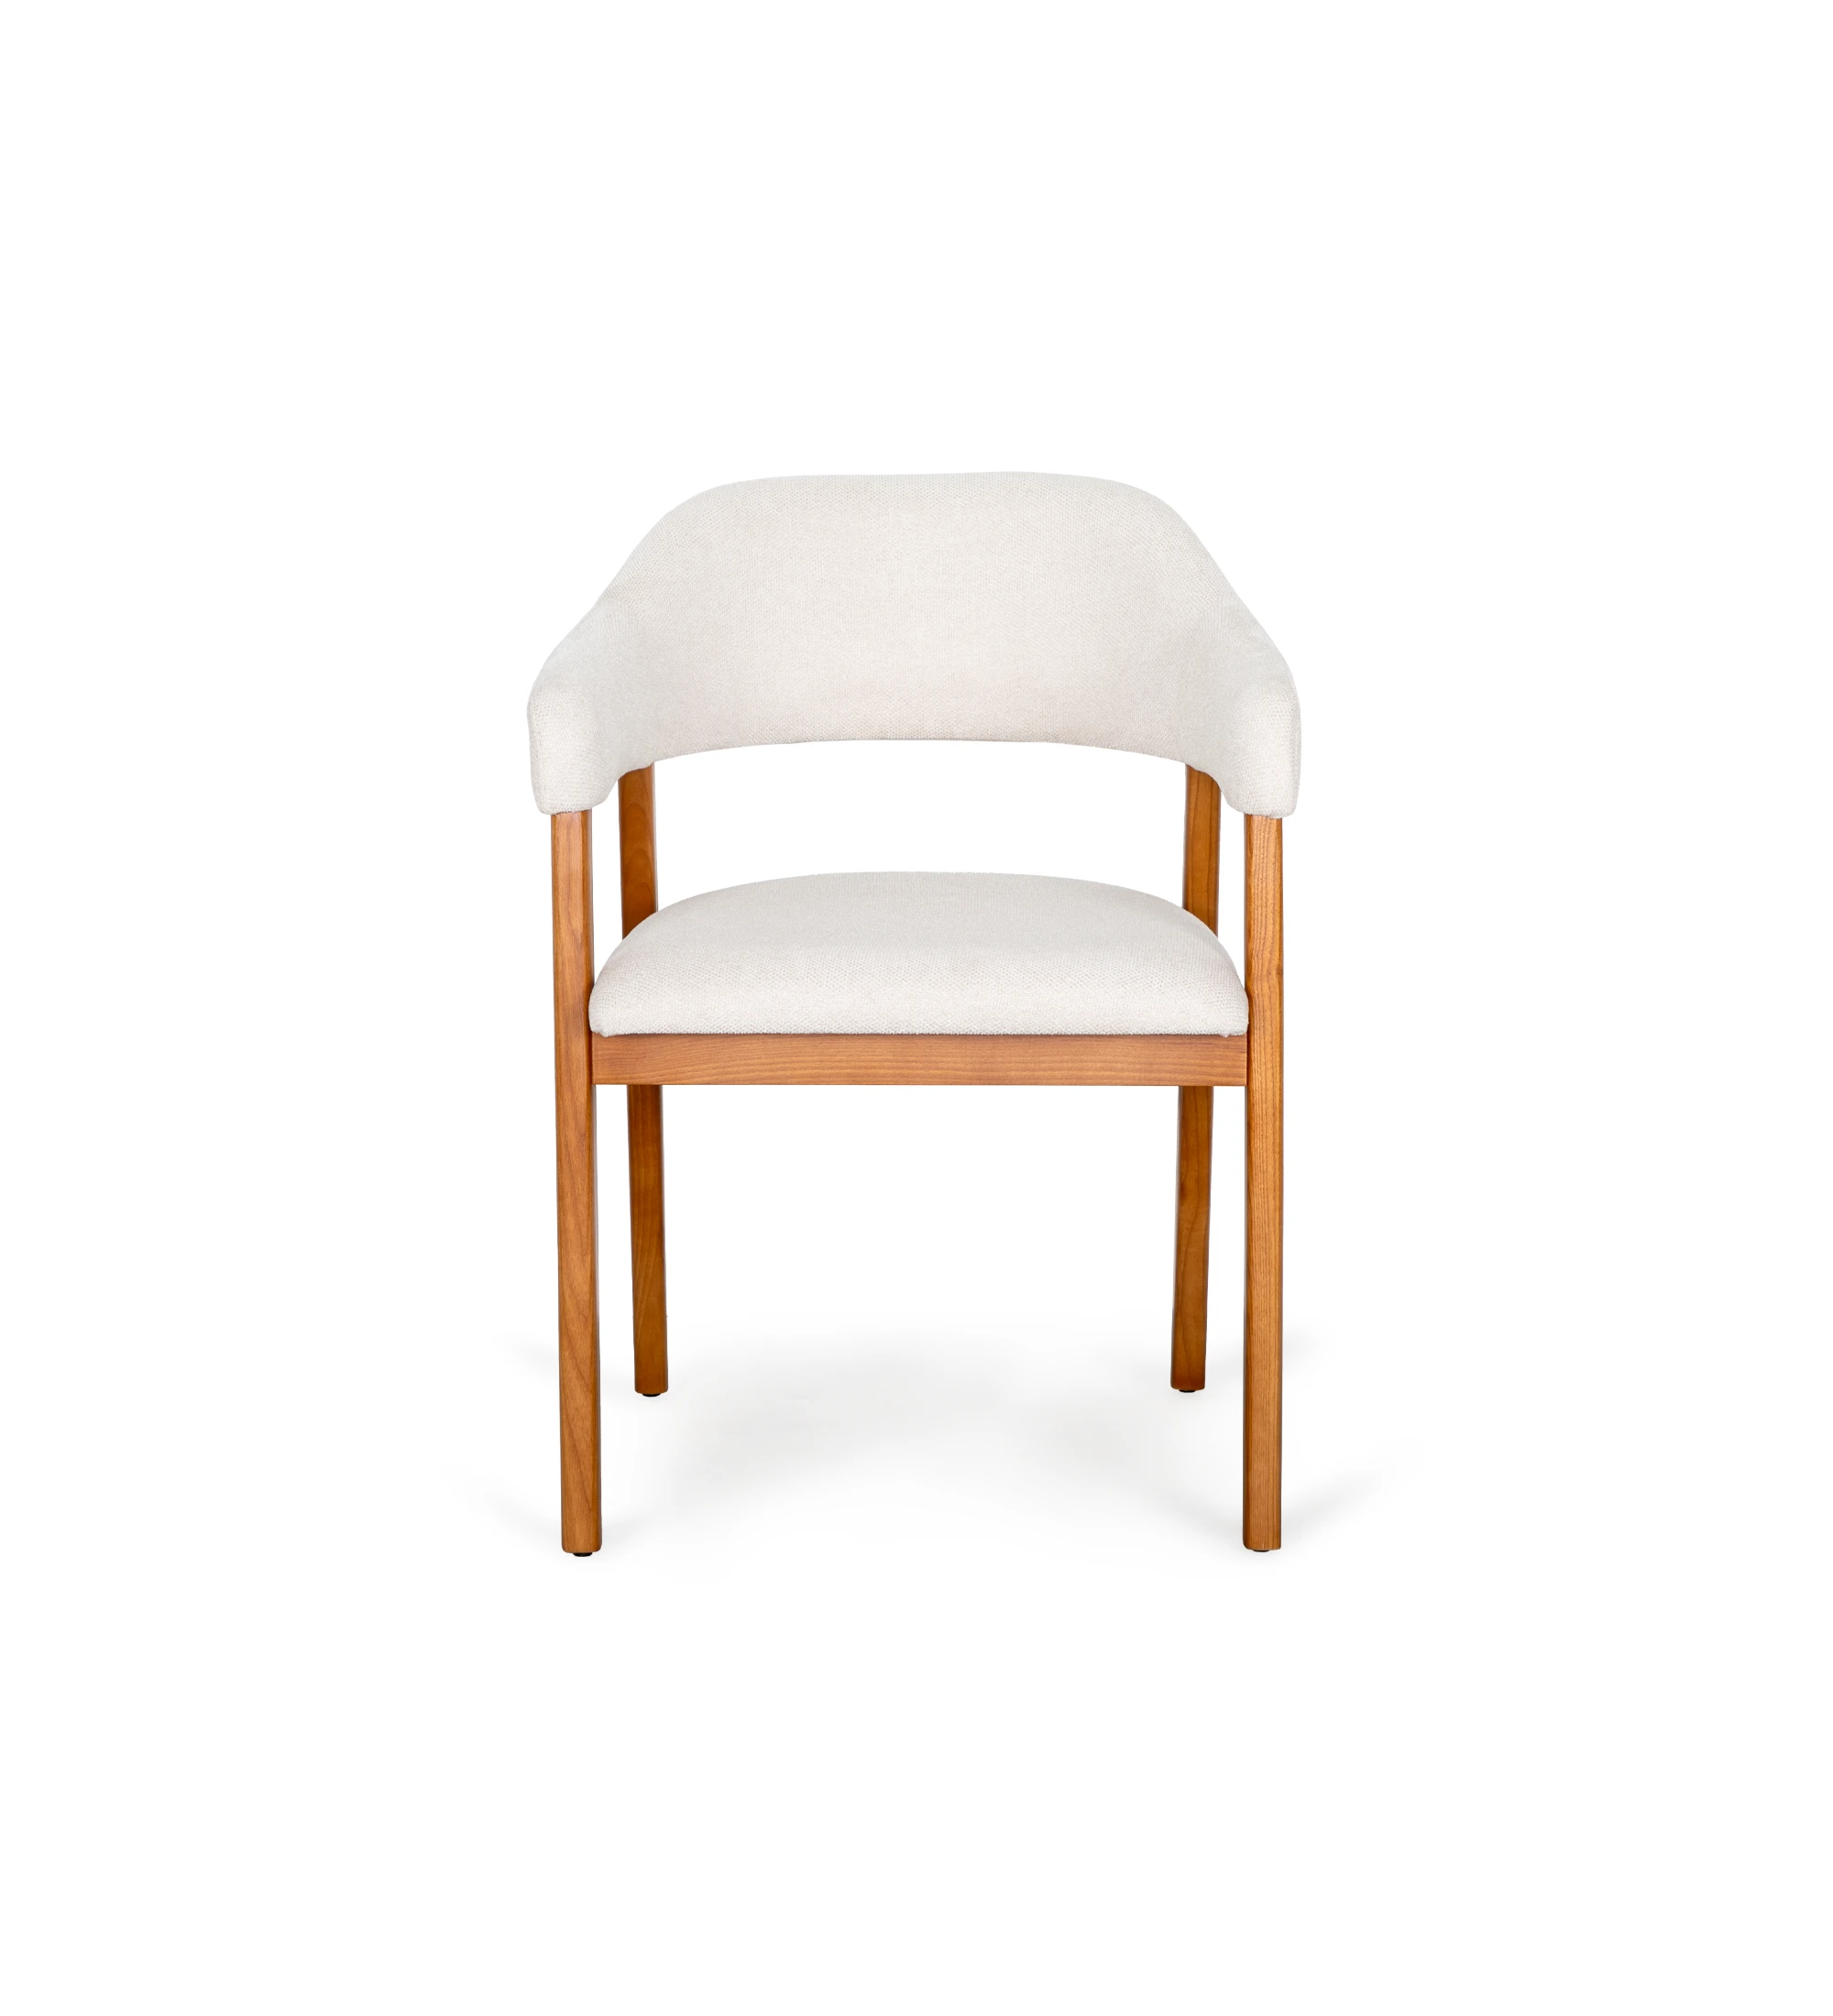 Silla con brazos, en madera de fresno color miel, con asiento y respaldo tapizados en tela